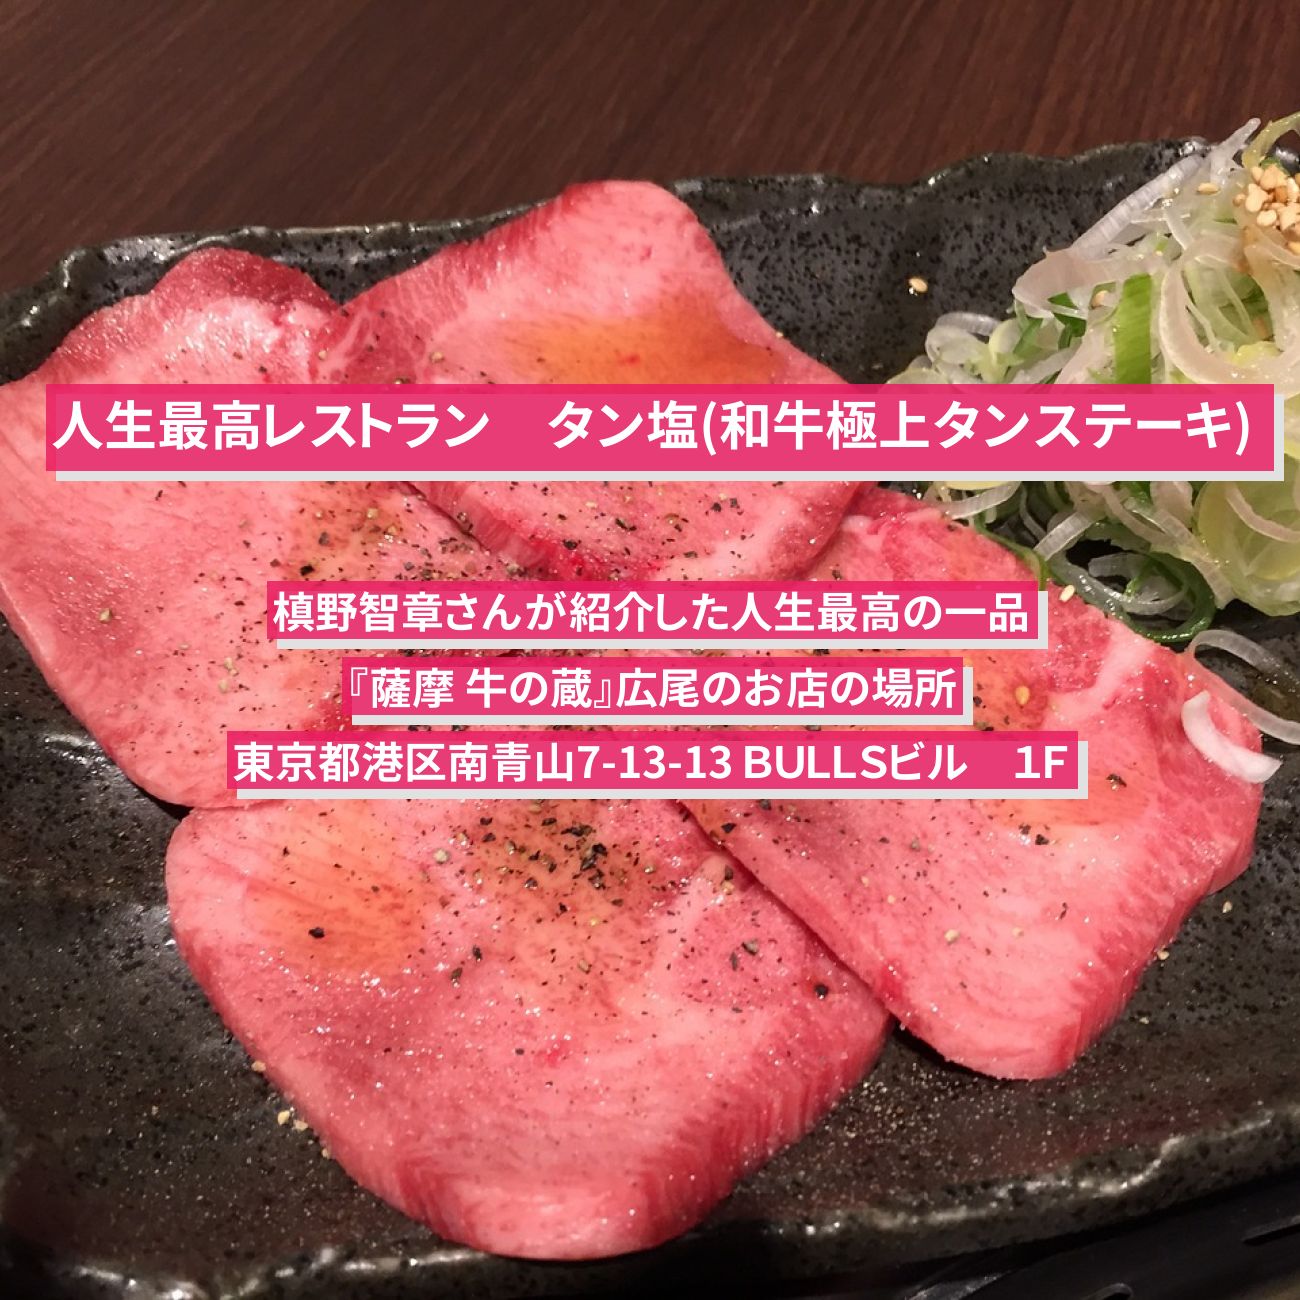 【人生最高レストラン】タン塩(和牛極上タンステーキ)槙野智章『薩摩 牛の蔵』広尾のお店の場所